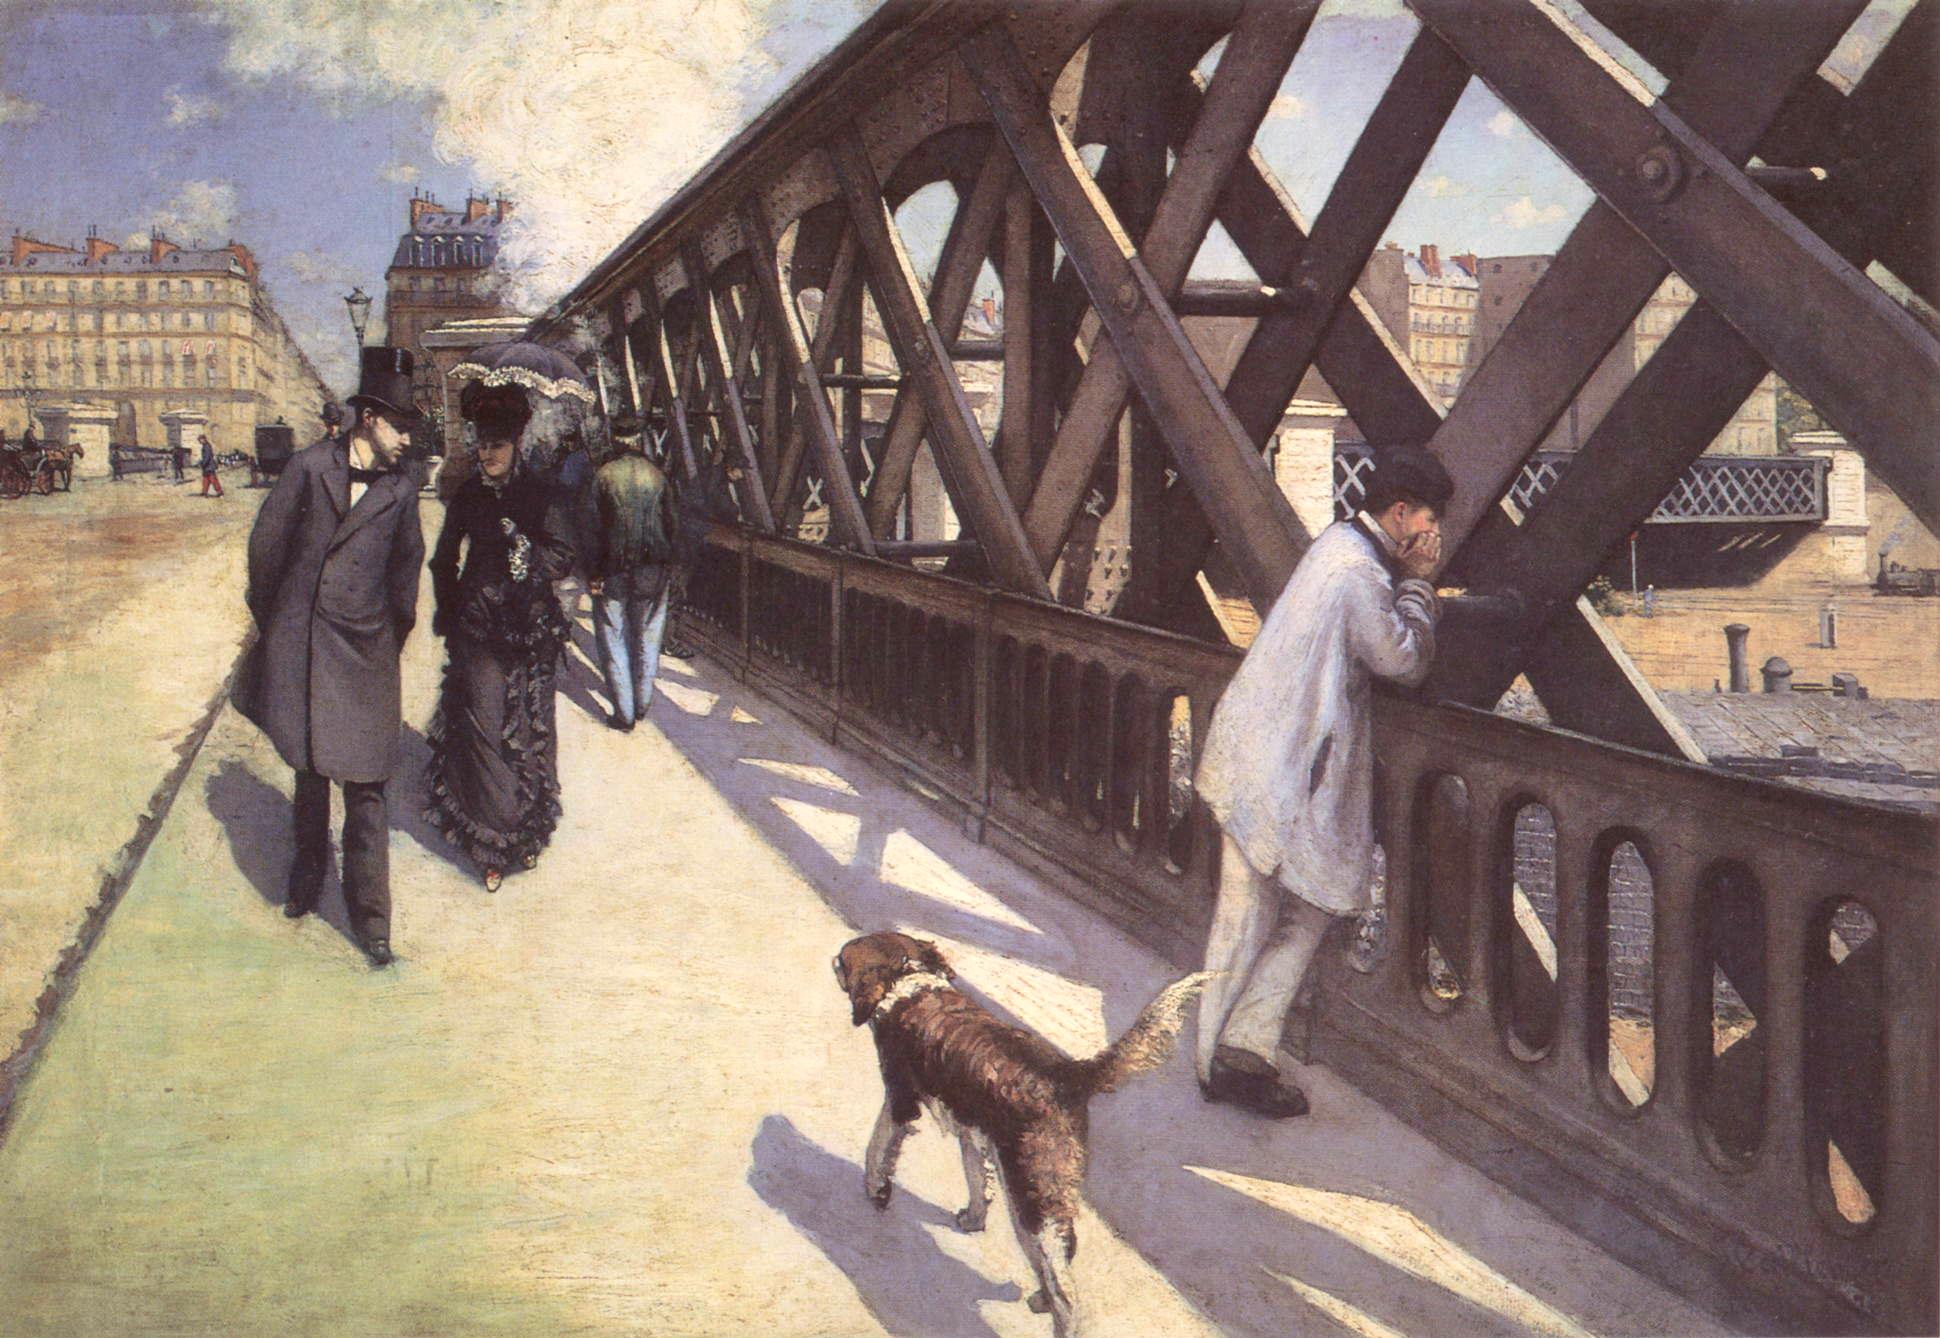 欧洲桥 by 古斯塔夫 卡勒波特 - 1876 - 125 x 181 cm  